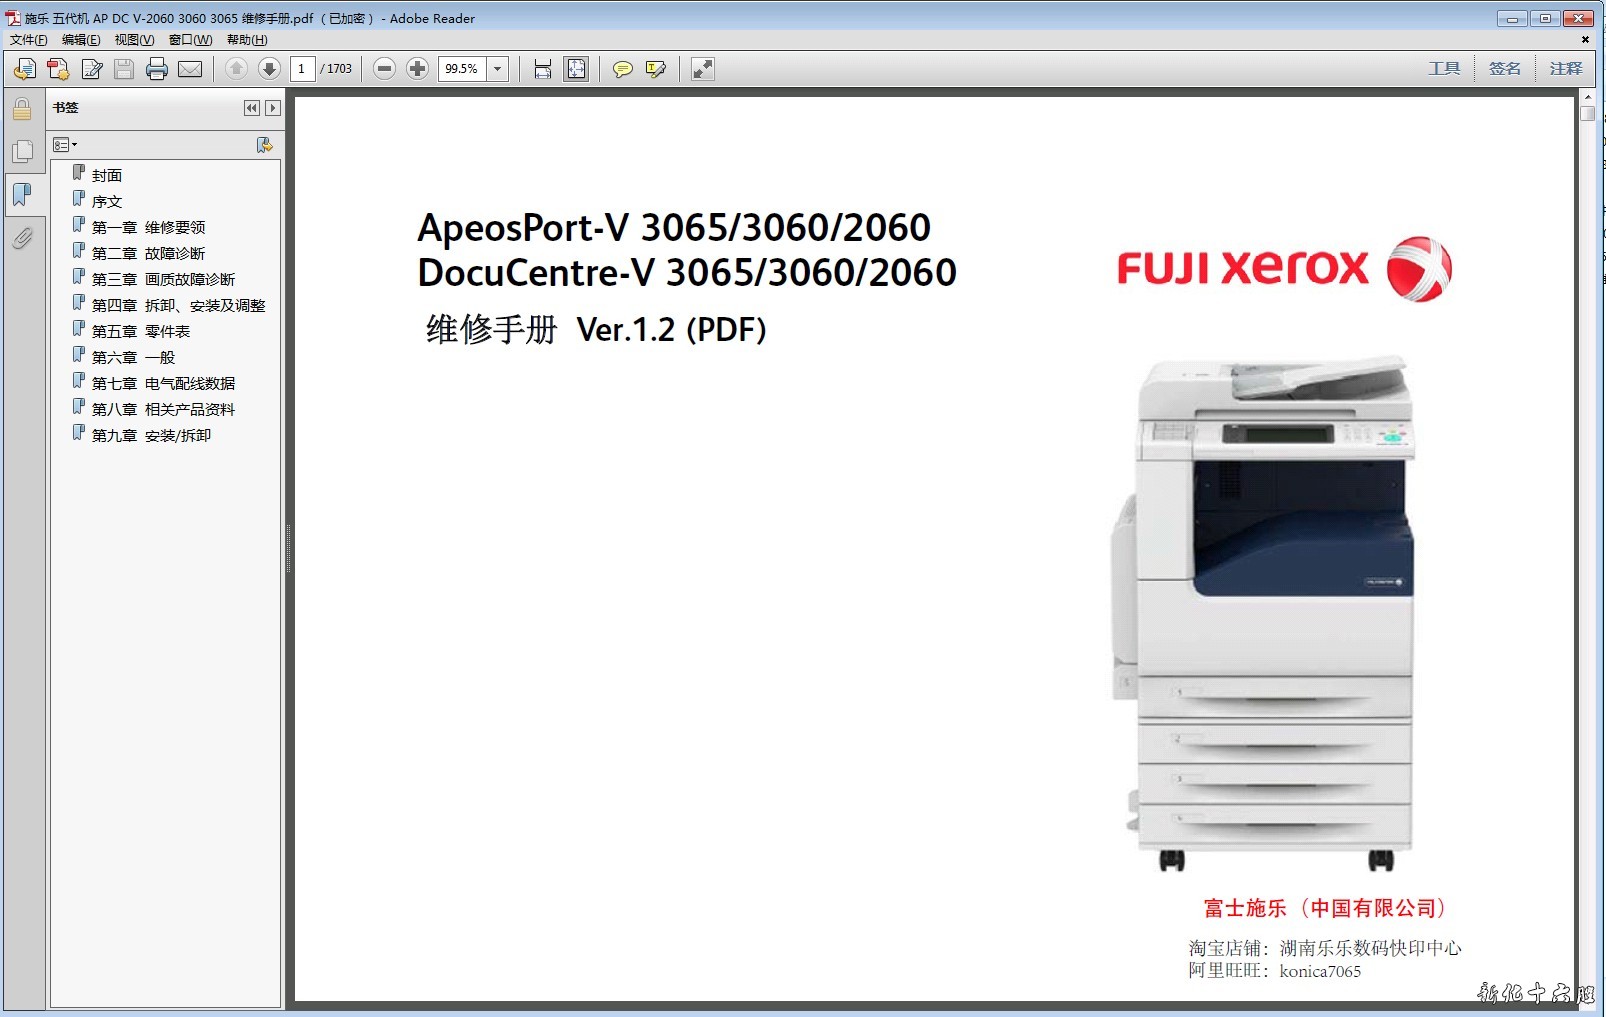 施乐5代机 AP DC V 2060 3060 3065 复印机中文维修手册.jpg